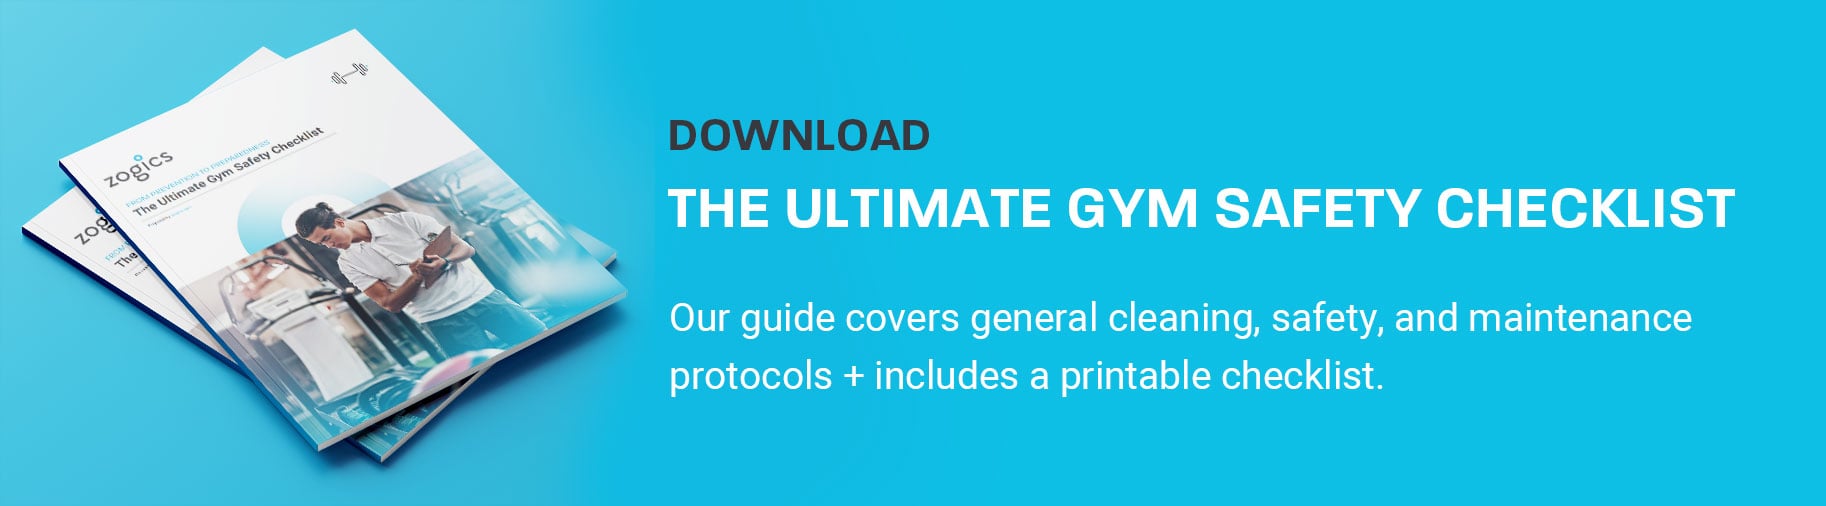 gym-safety-checklist-download_blog-banner